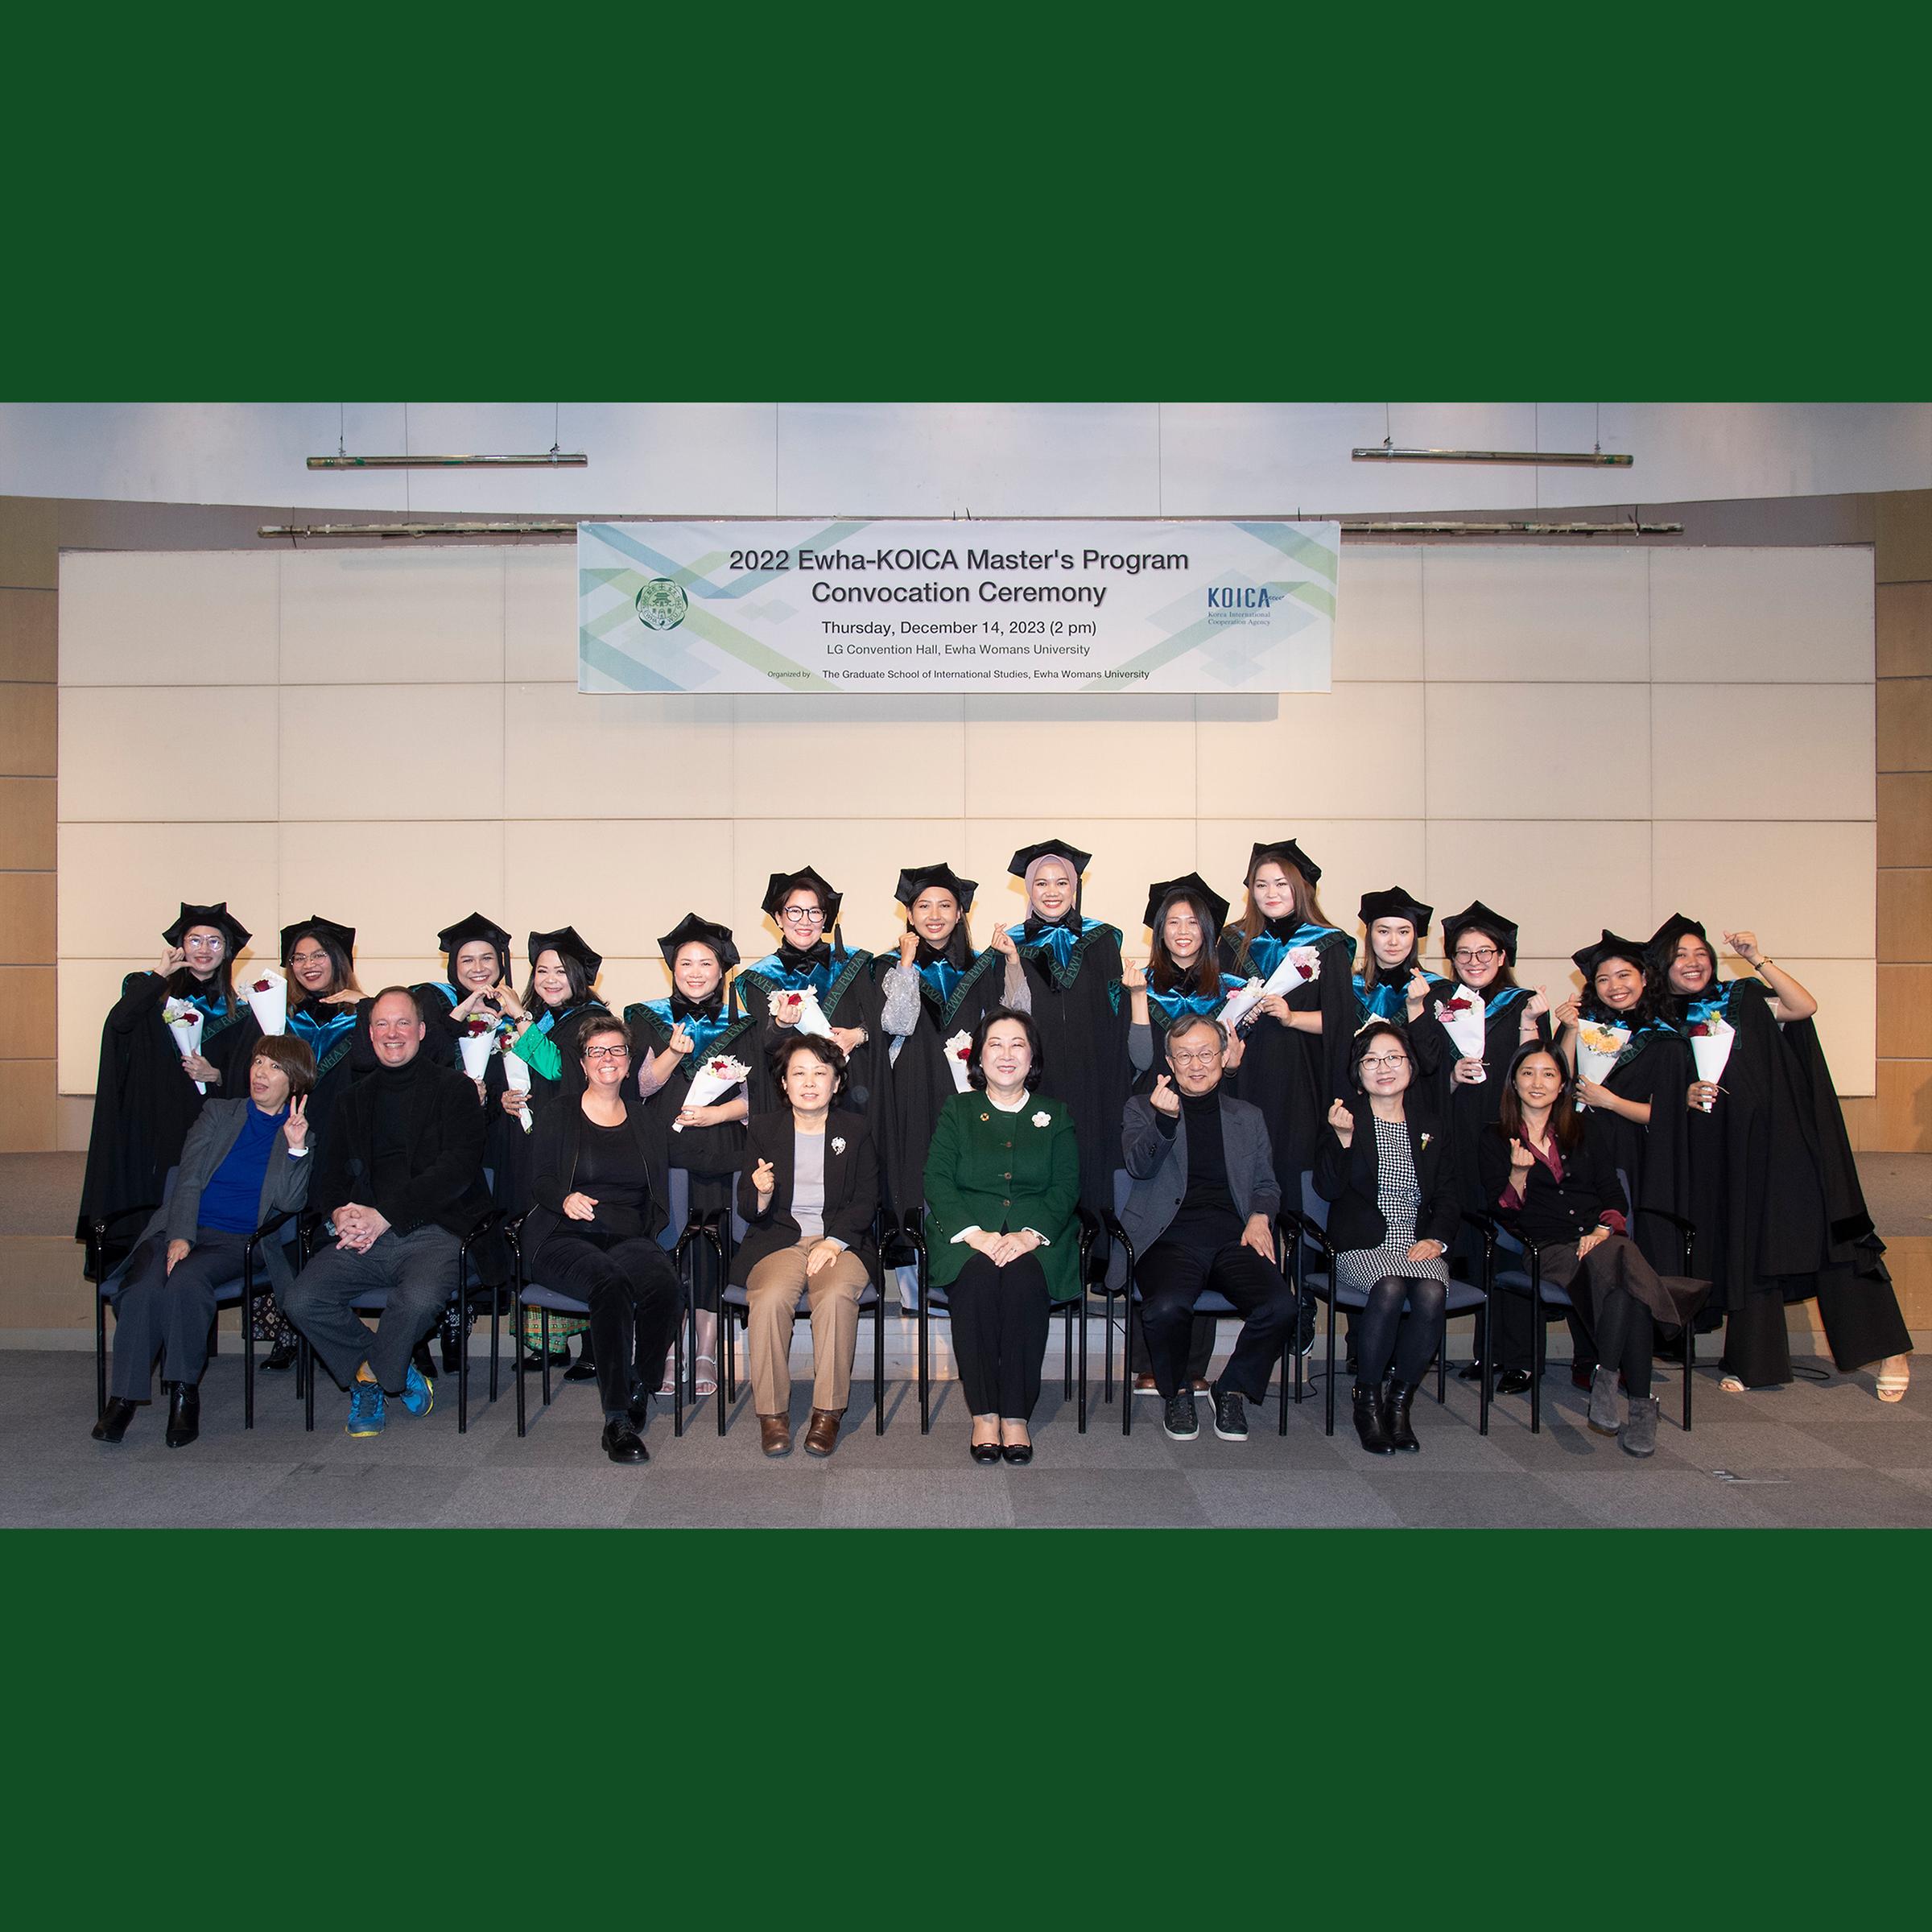 2022 EWHA-KOICA Master's Program Convocation Ceremony